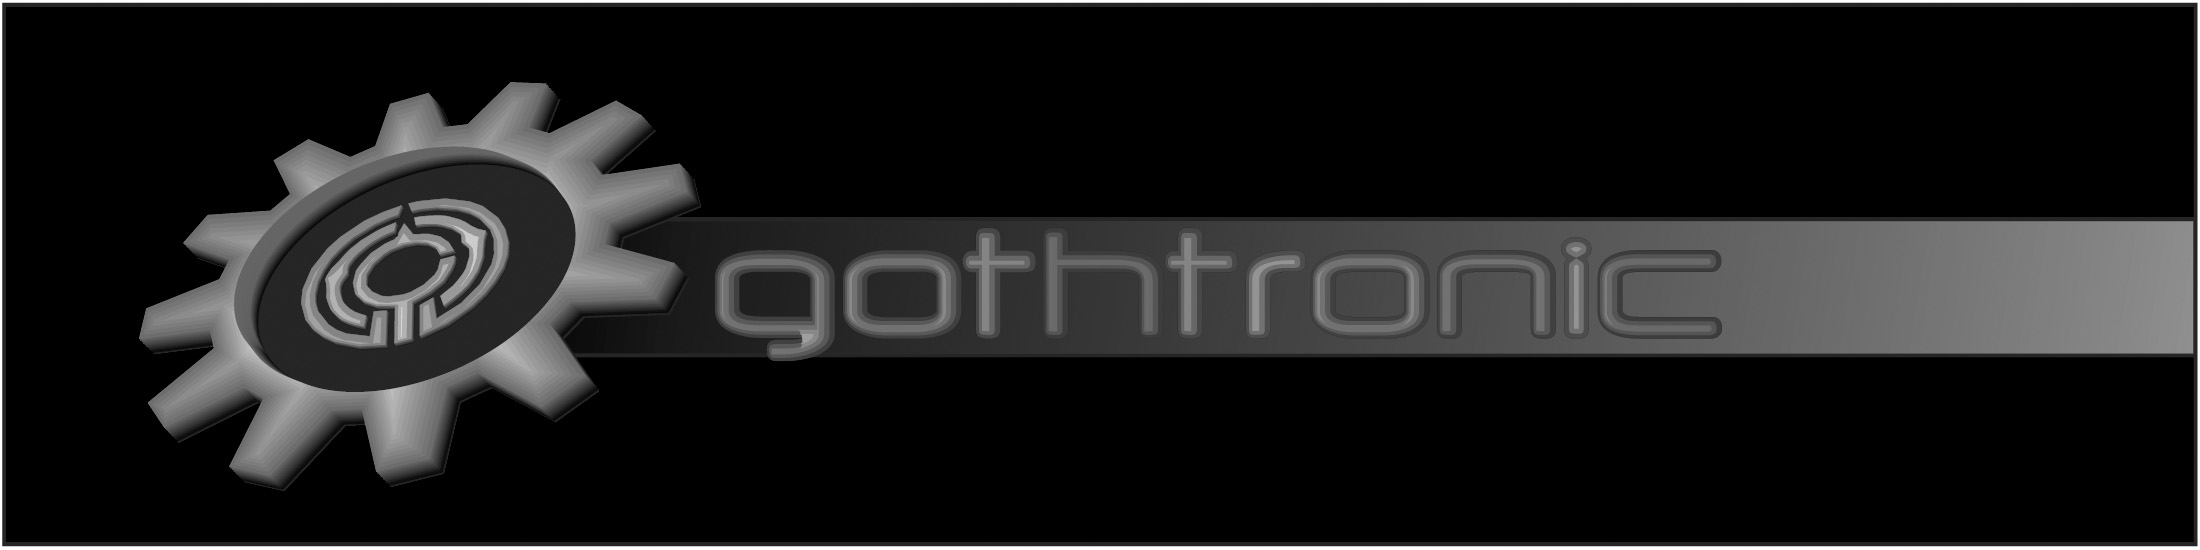 gothtroniclogo